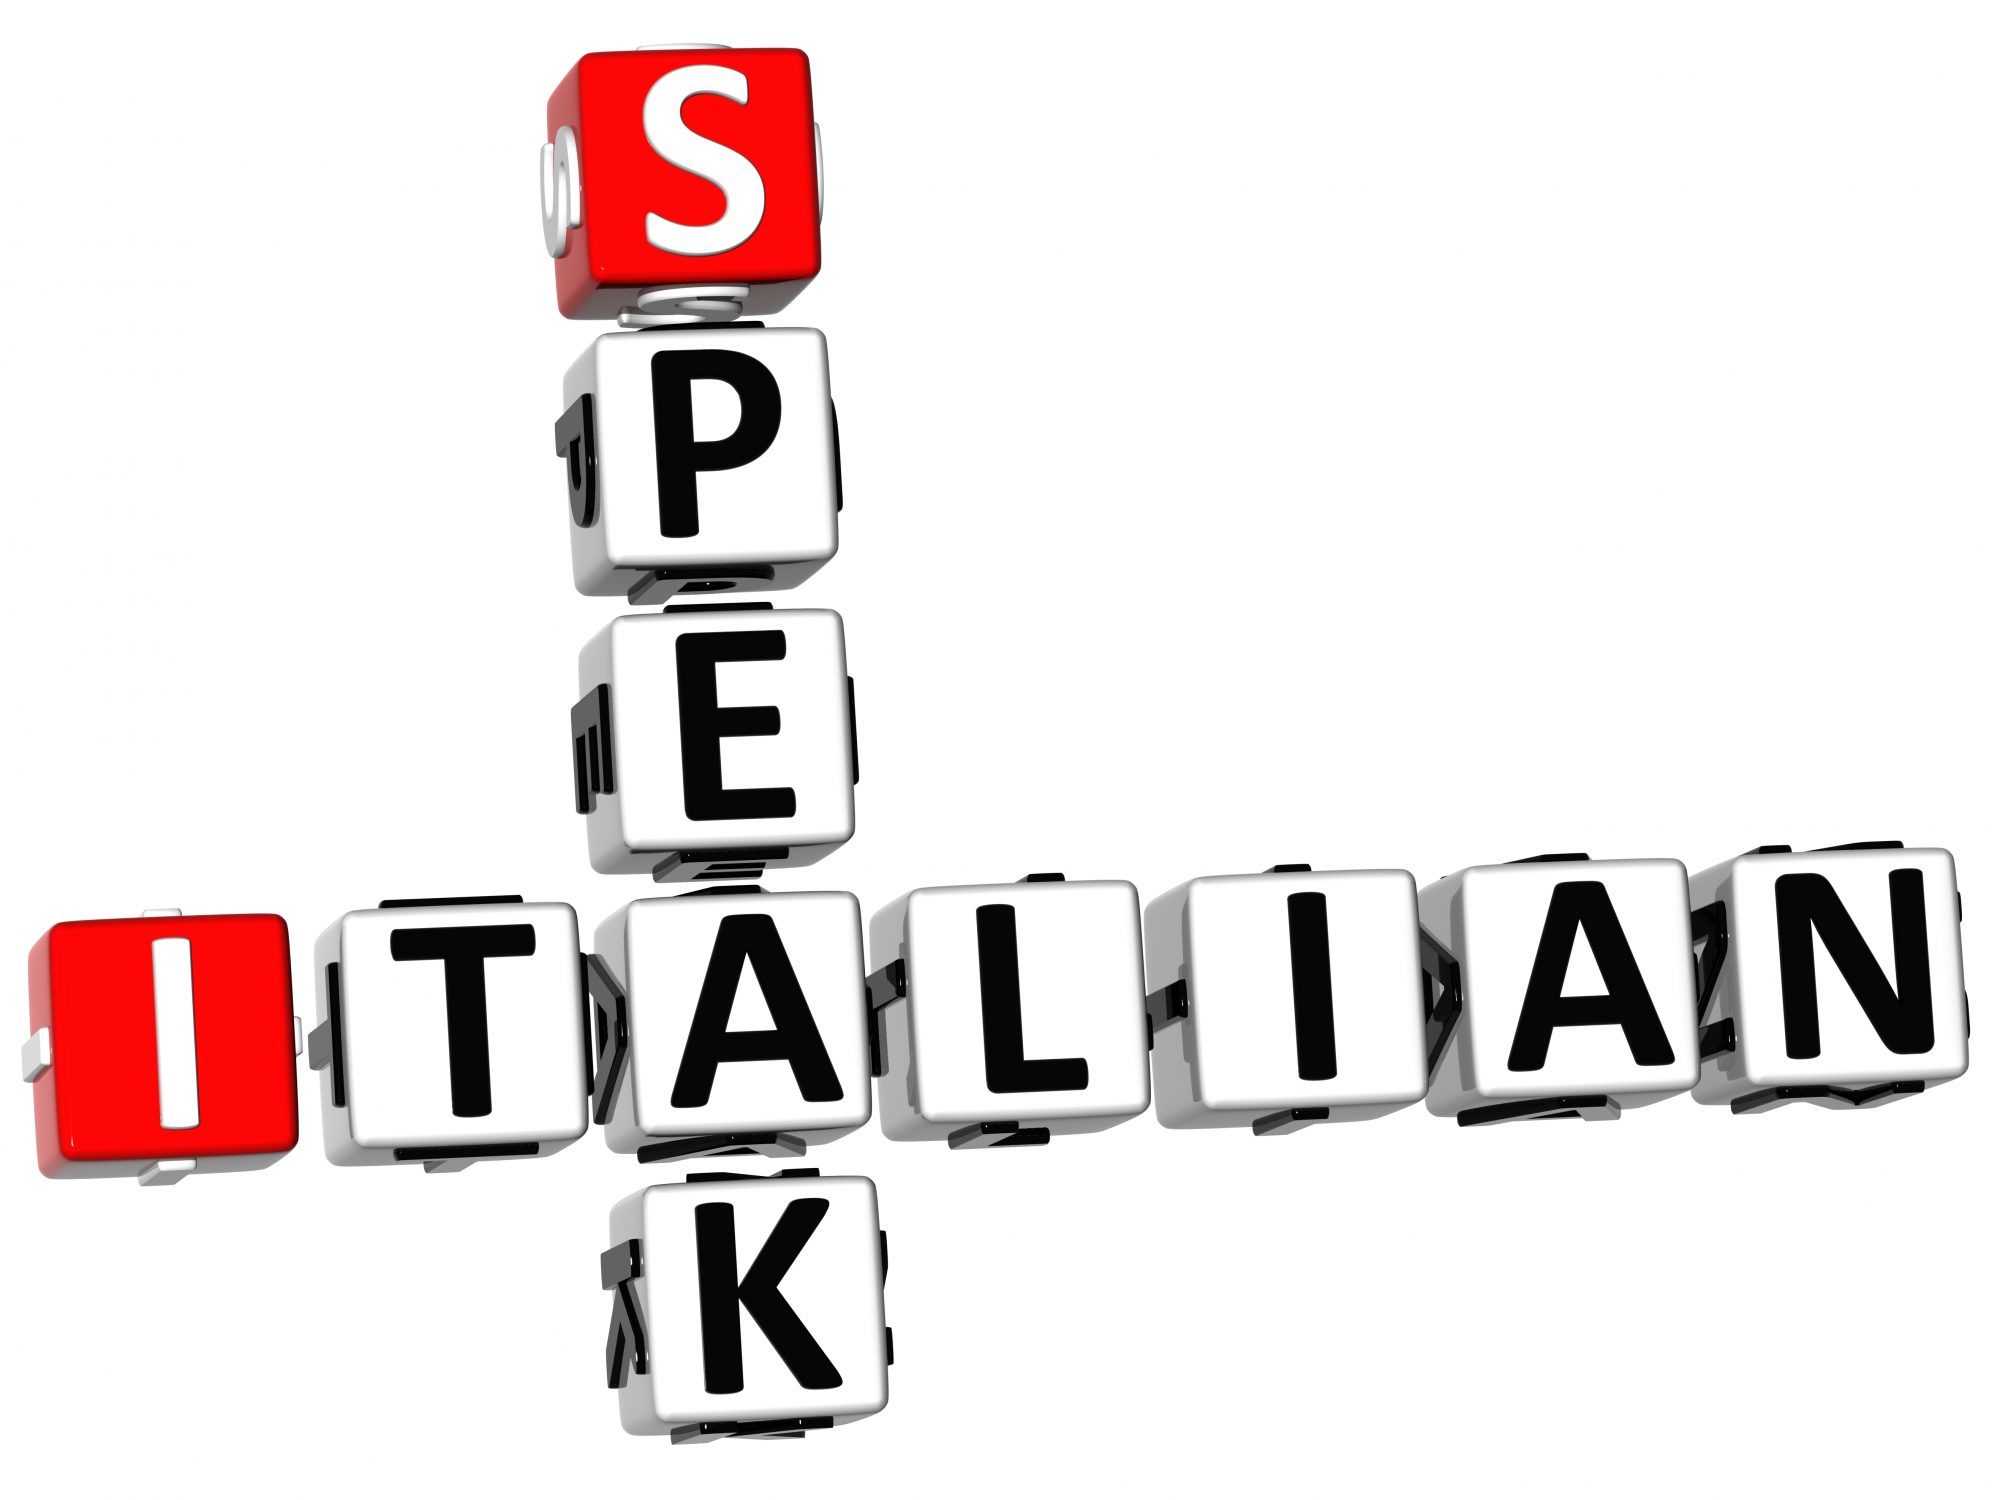 How to speak italian